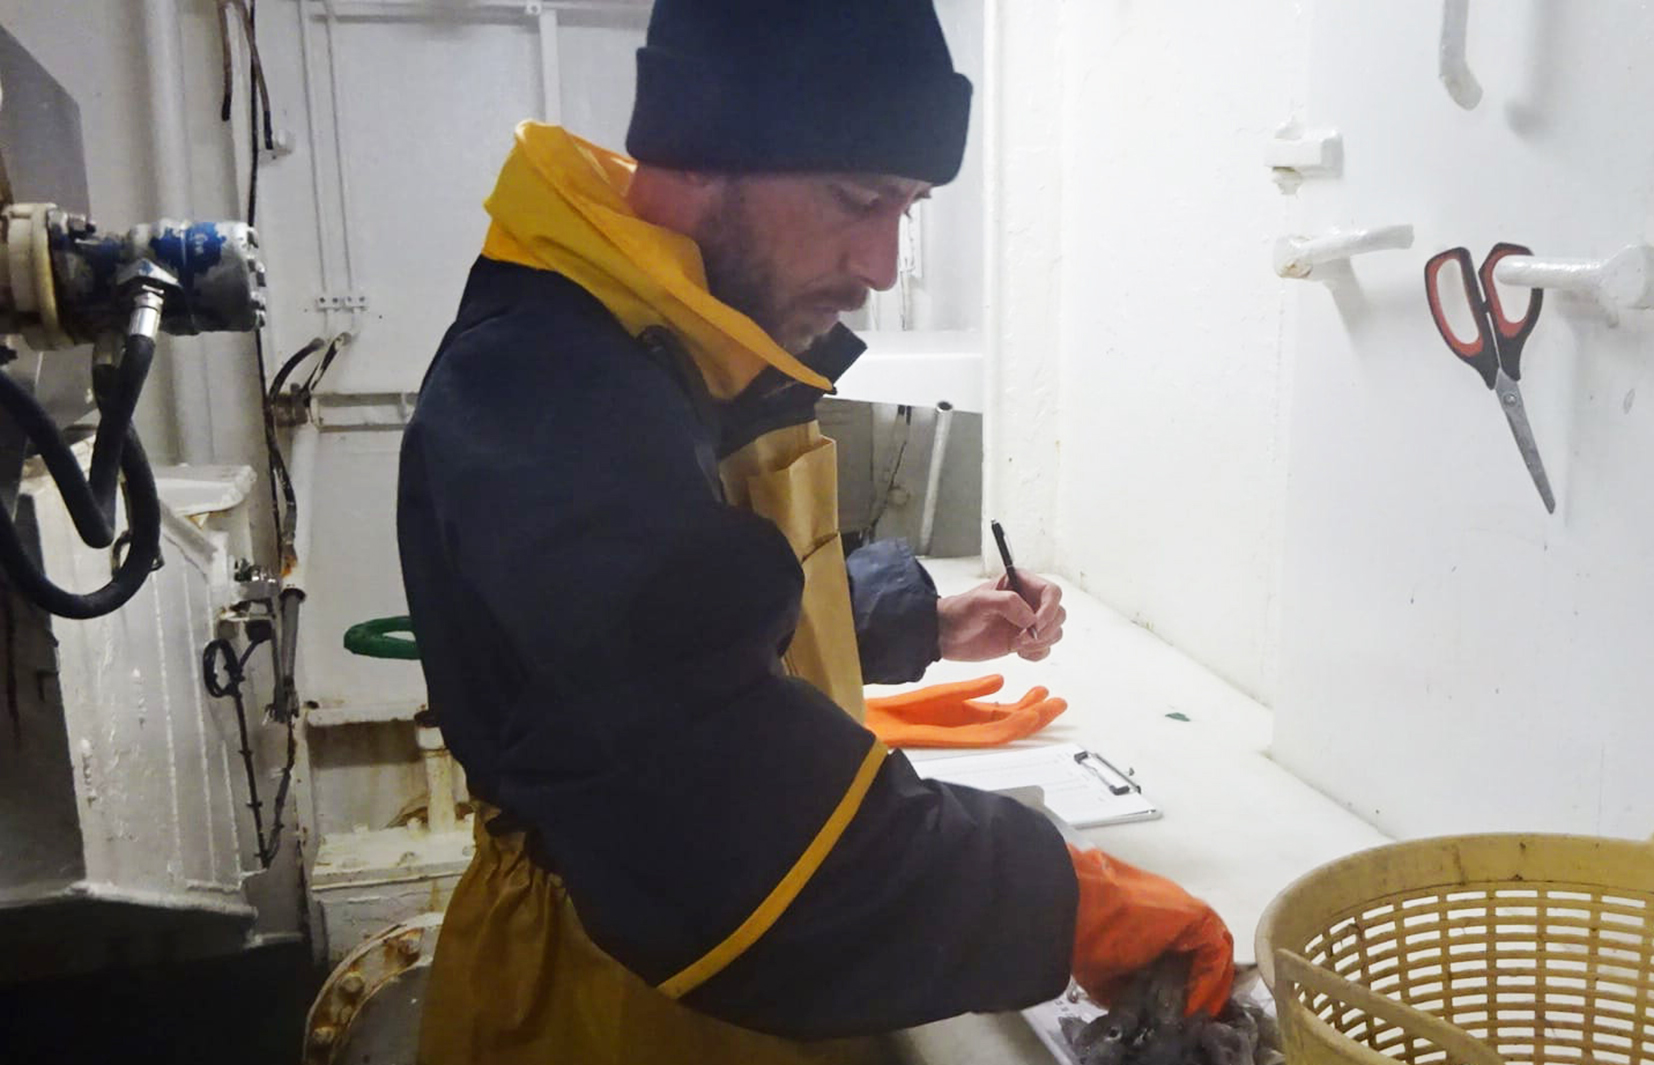 Los observadores pesqueros registran datos para realizar muestreos de las especies capturadas